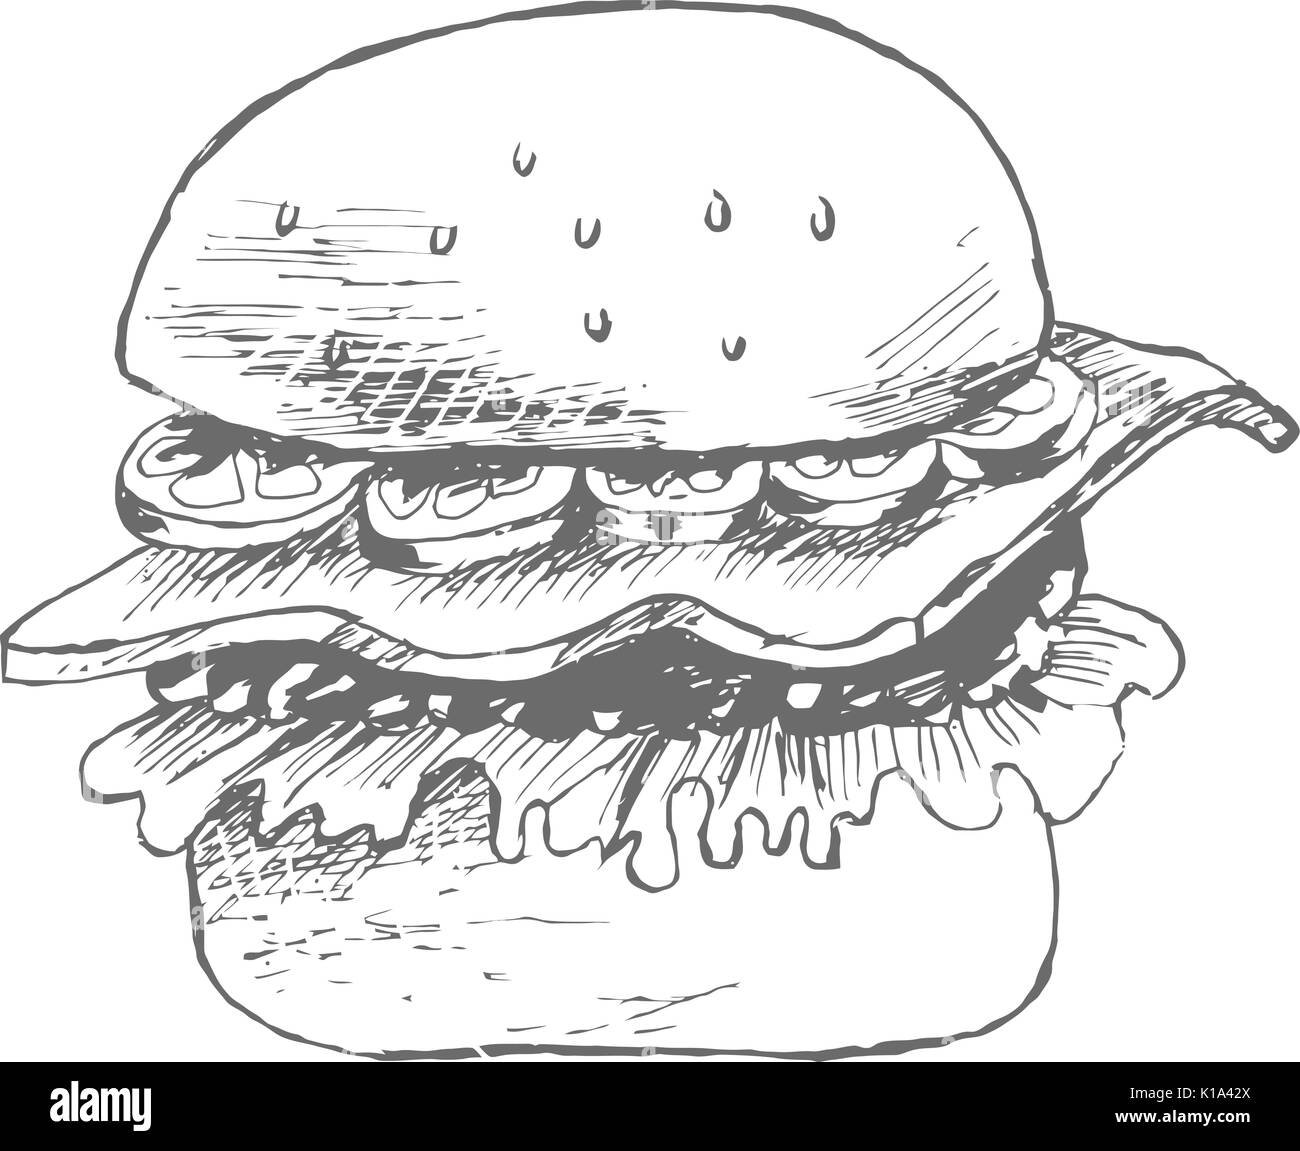 Hamburger hand drawn sketch Stock Vector